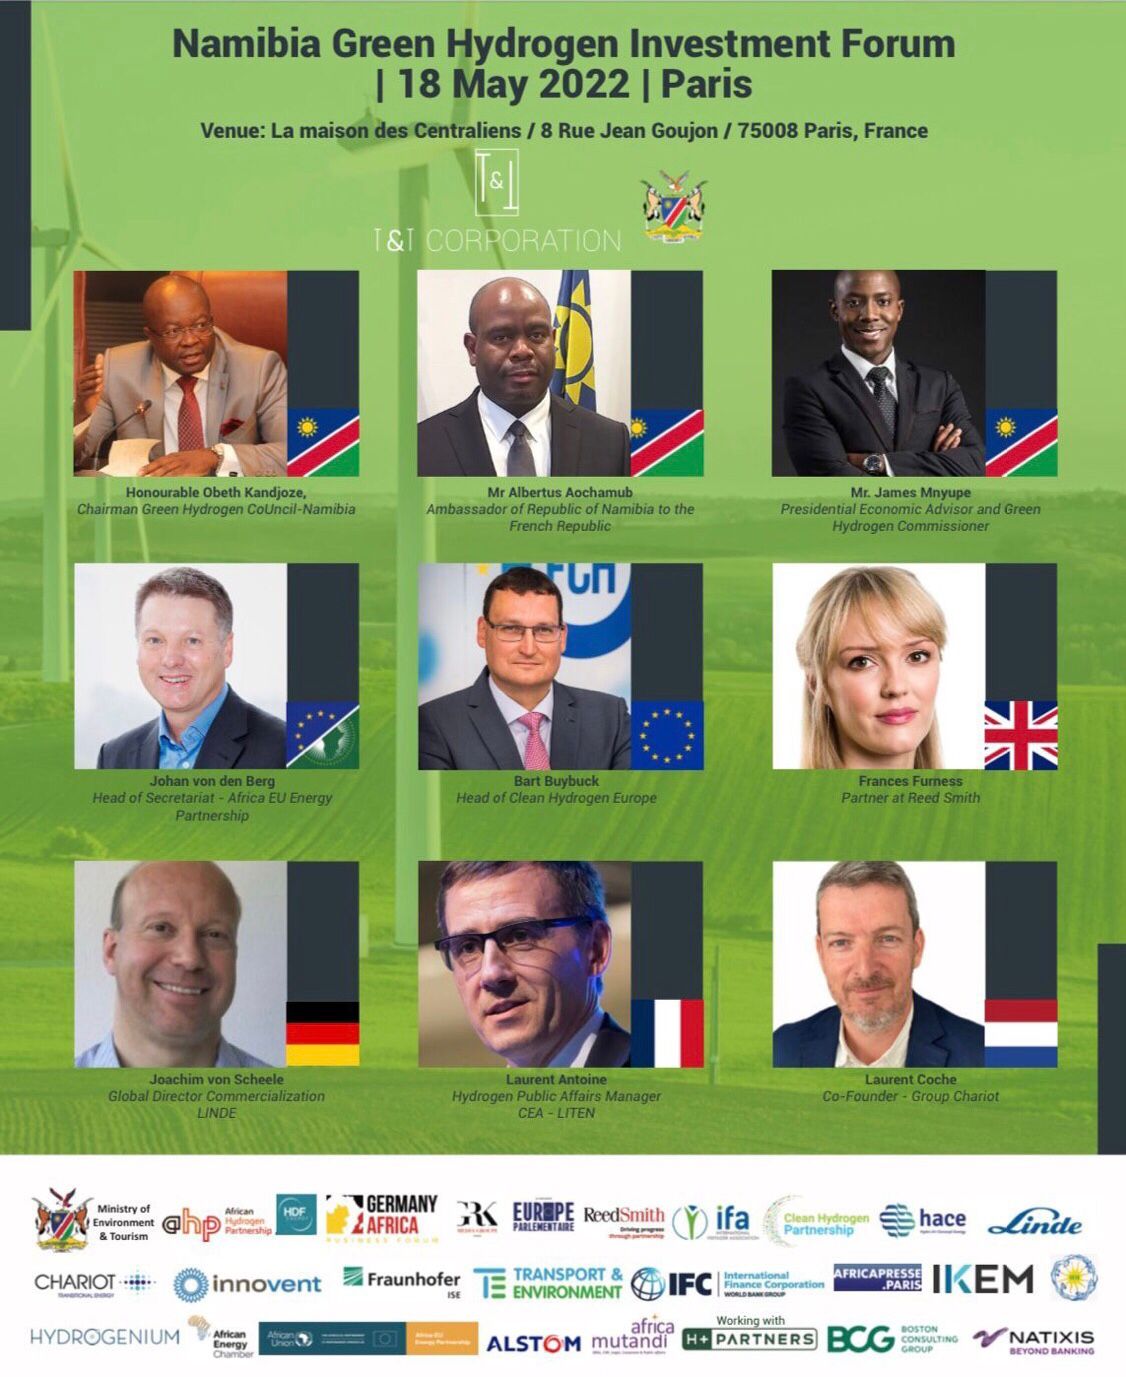 Africa Mutandi partenaire du Namibia Green Hydrogen Investment Forum, rendez-vous le 18 mai à Paris !!!